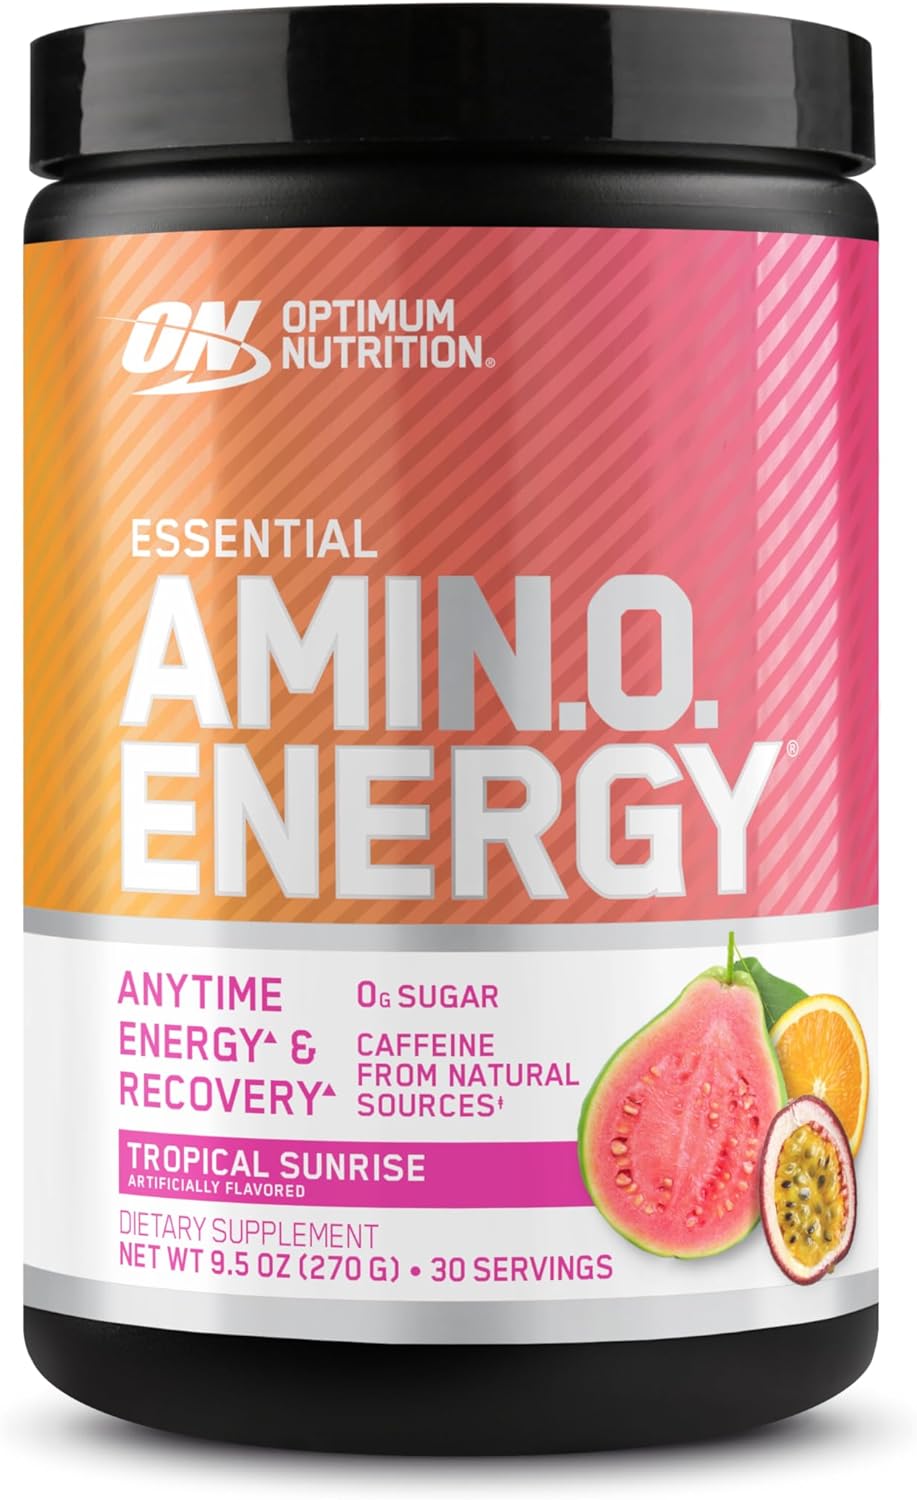 Optimum Nutrition New Flavor Amino Energ…